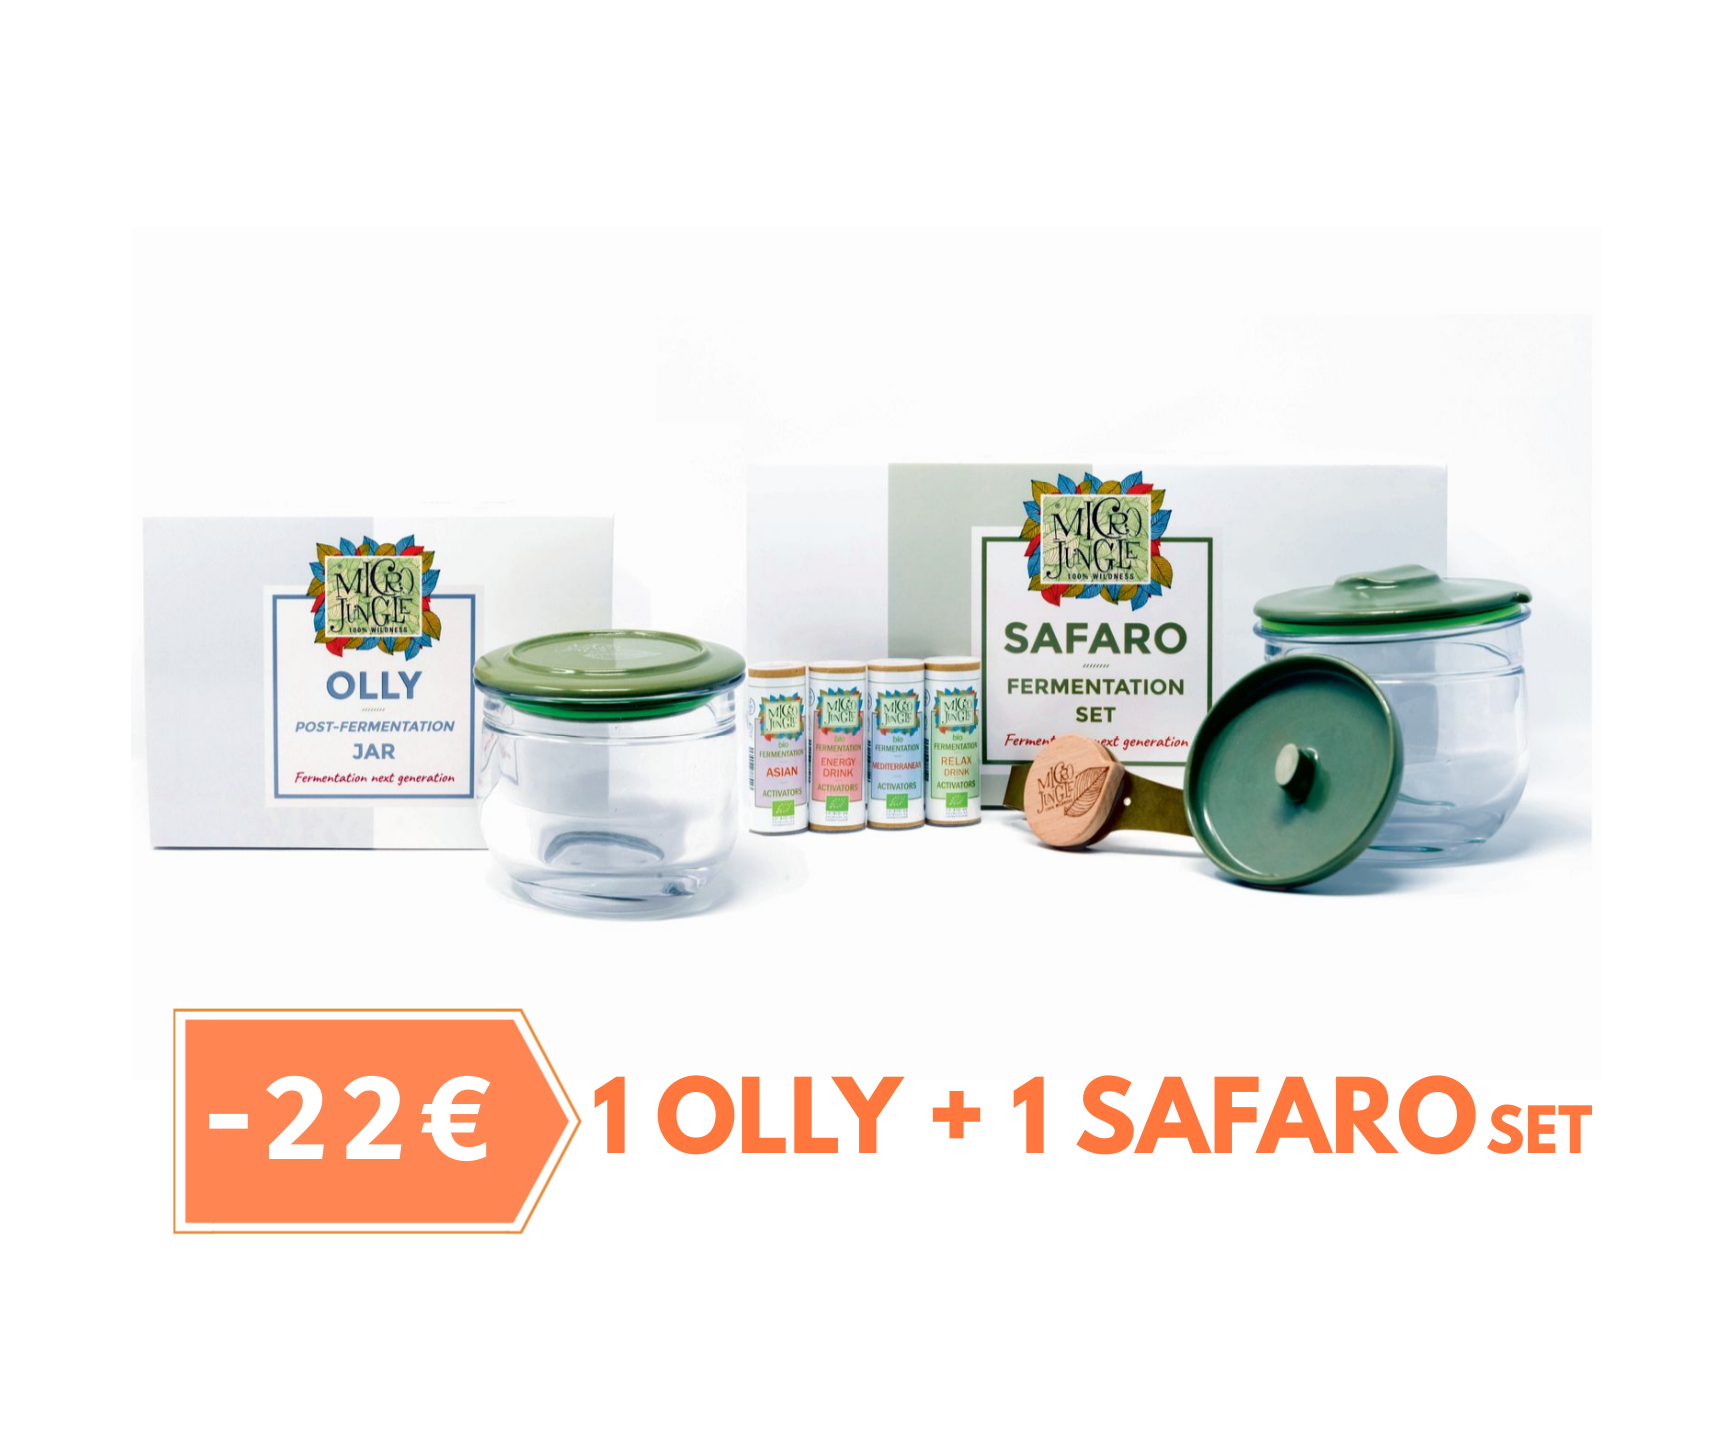 Offerta promo: 1 Kit per fermentazione Safaro + 1 Olly per conservazione